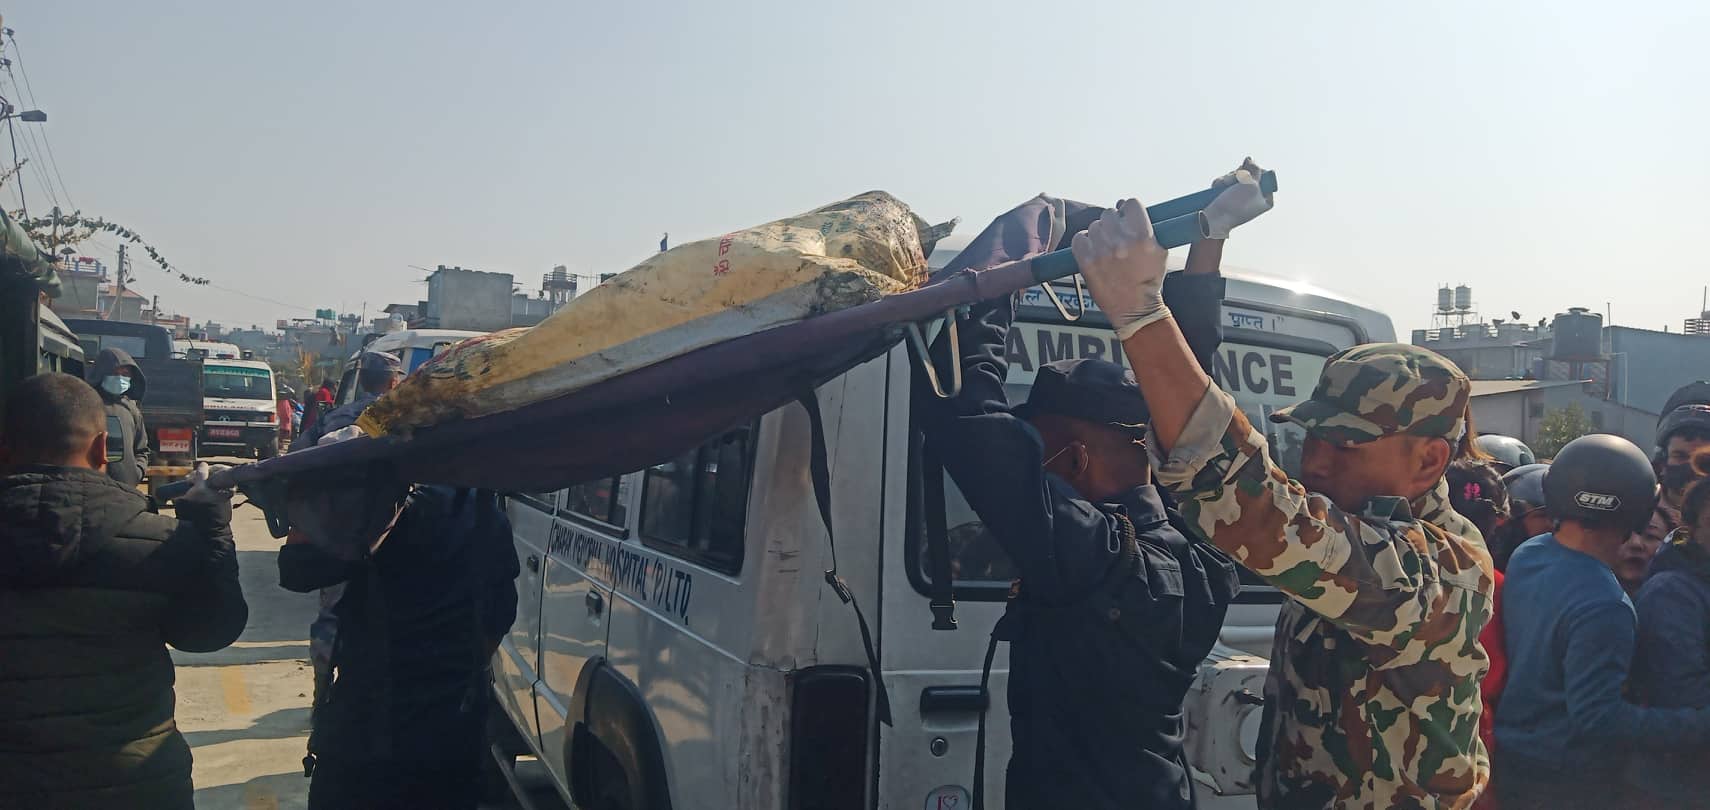 विमान दुर्घटनामा मृत्यु भई पहिचान नभएका शवलाई काठमाडौं पठाइने